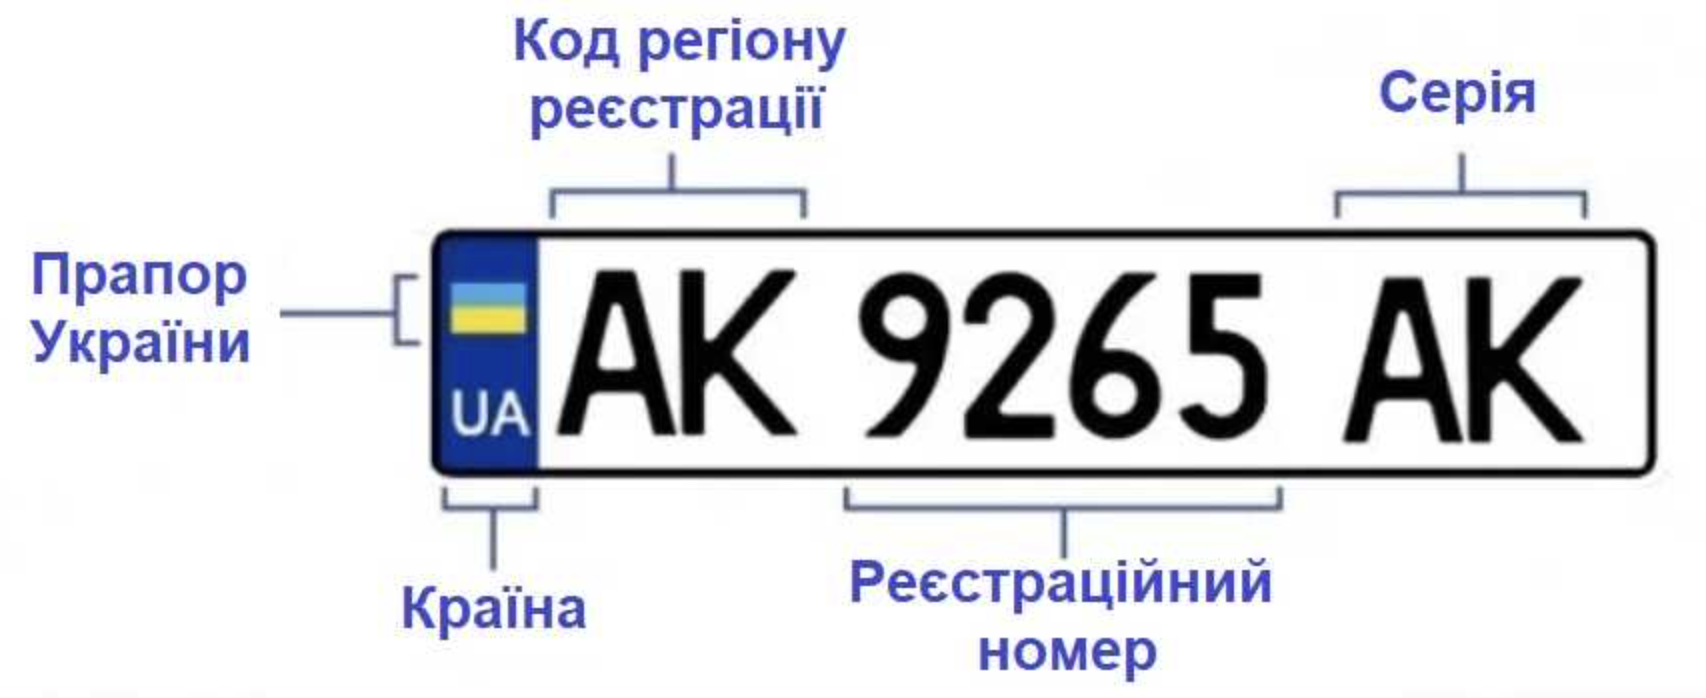 Номер украина какая область. Обозначение автомобильных номеров Украины. Номерные знаки регионов Украины. Автомобильные номера Украины по регионам расшифровка. Номера Украины автомобильные.